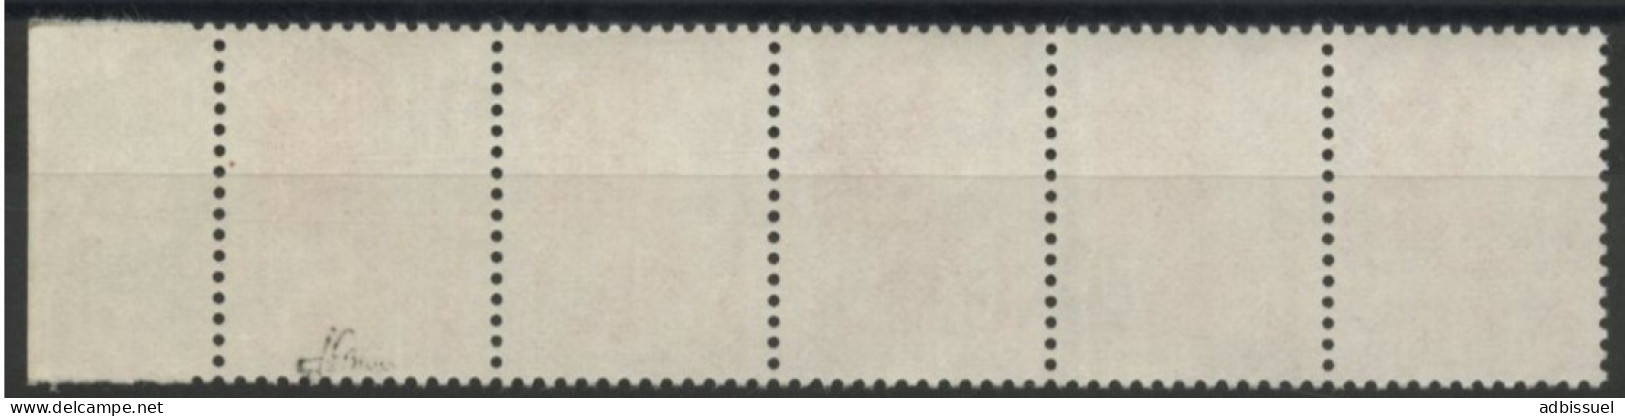 N° 2182d Sans Phosphore Tenant à Normal, Signé J.F. BRUN. TB. Lire Description - Unused Stamps